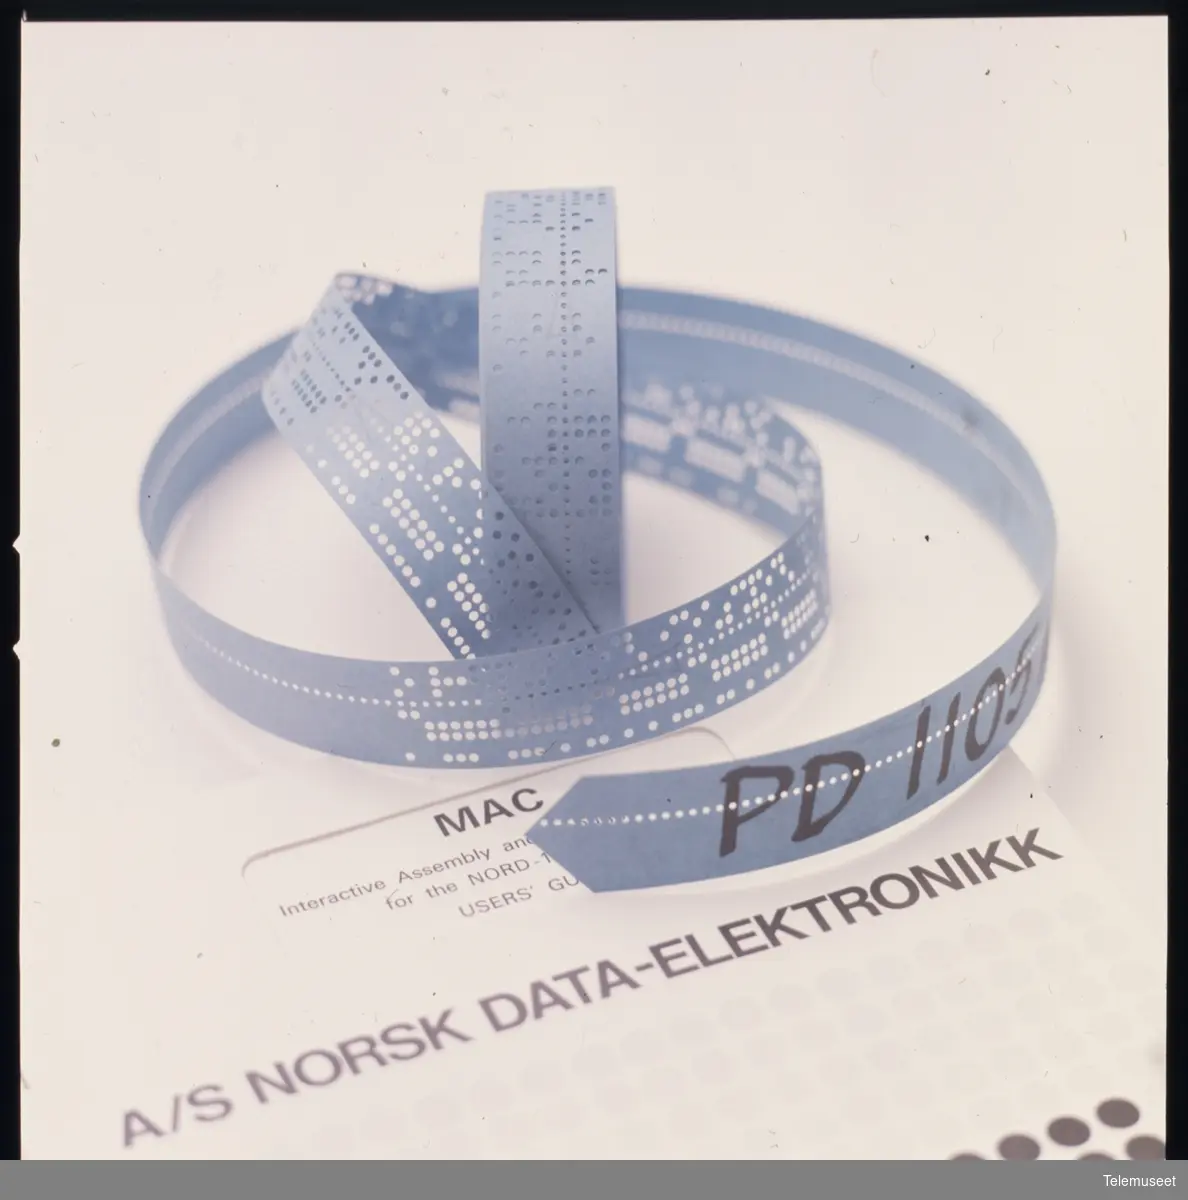 Data-elektronikk hullbånd Norsk Data